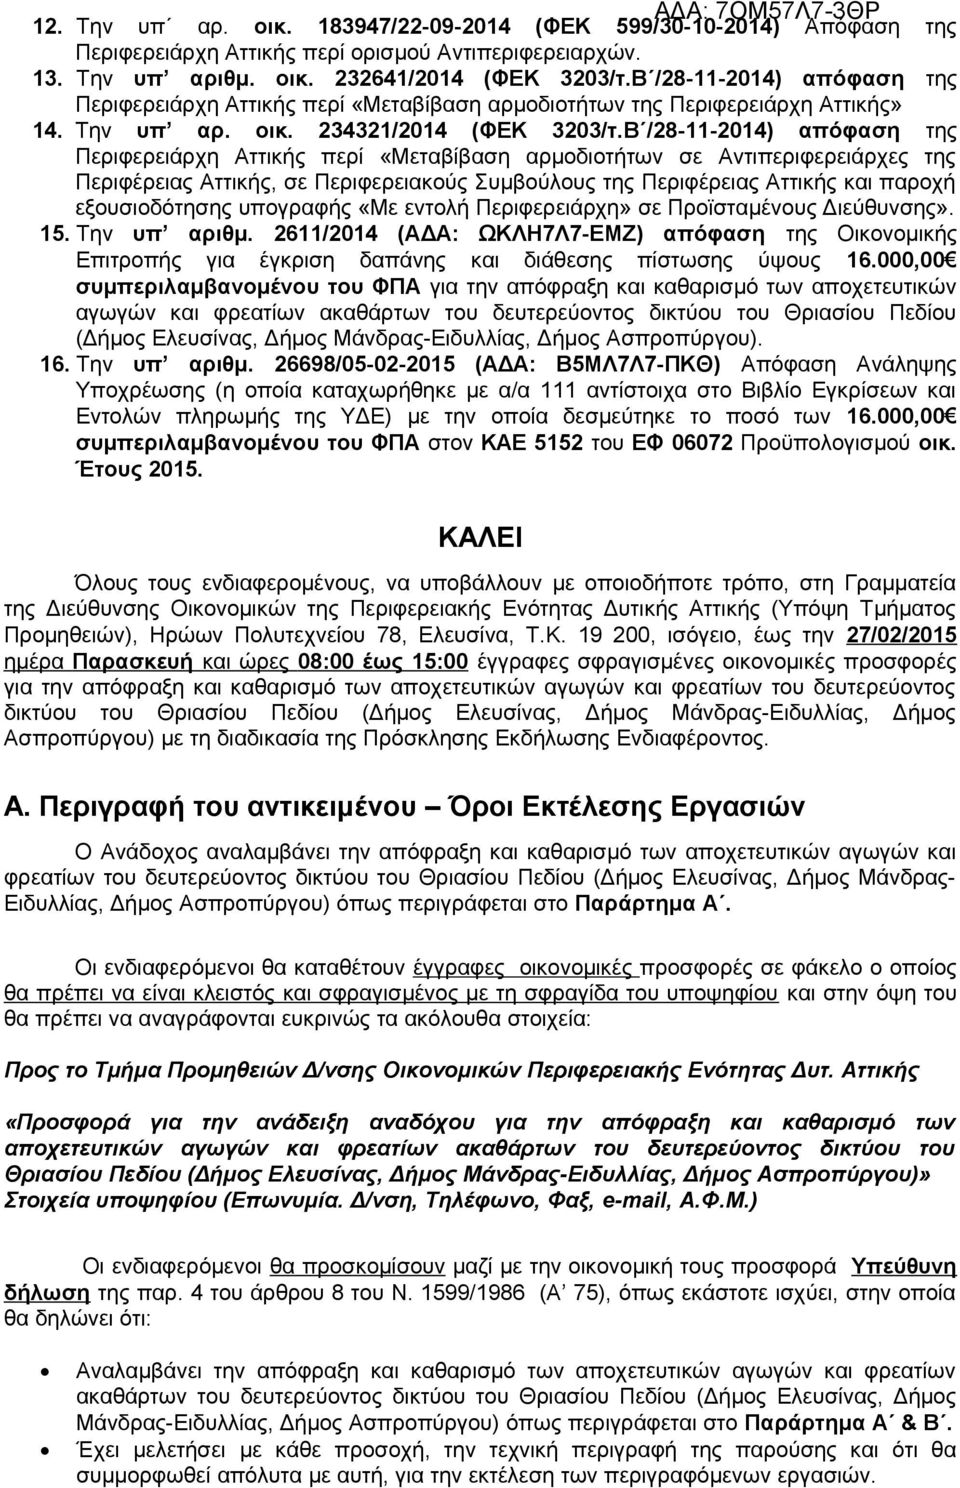 Β /28-11-2014) απόφαση της Περιφερειάρχη Αττικής περί «Μεταβίβαση αρμοδιοτήτων σε Αντιπεριφερειάρχες της Περιφέρειας Αττικής, σε Περιφερειακούς Συμβούλους της Περιφέρειας Αττικής και παροχή